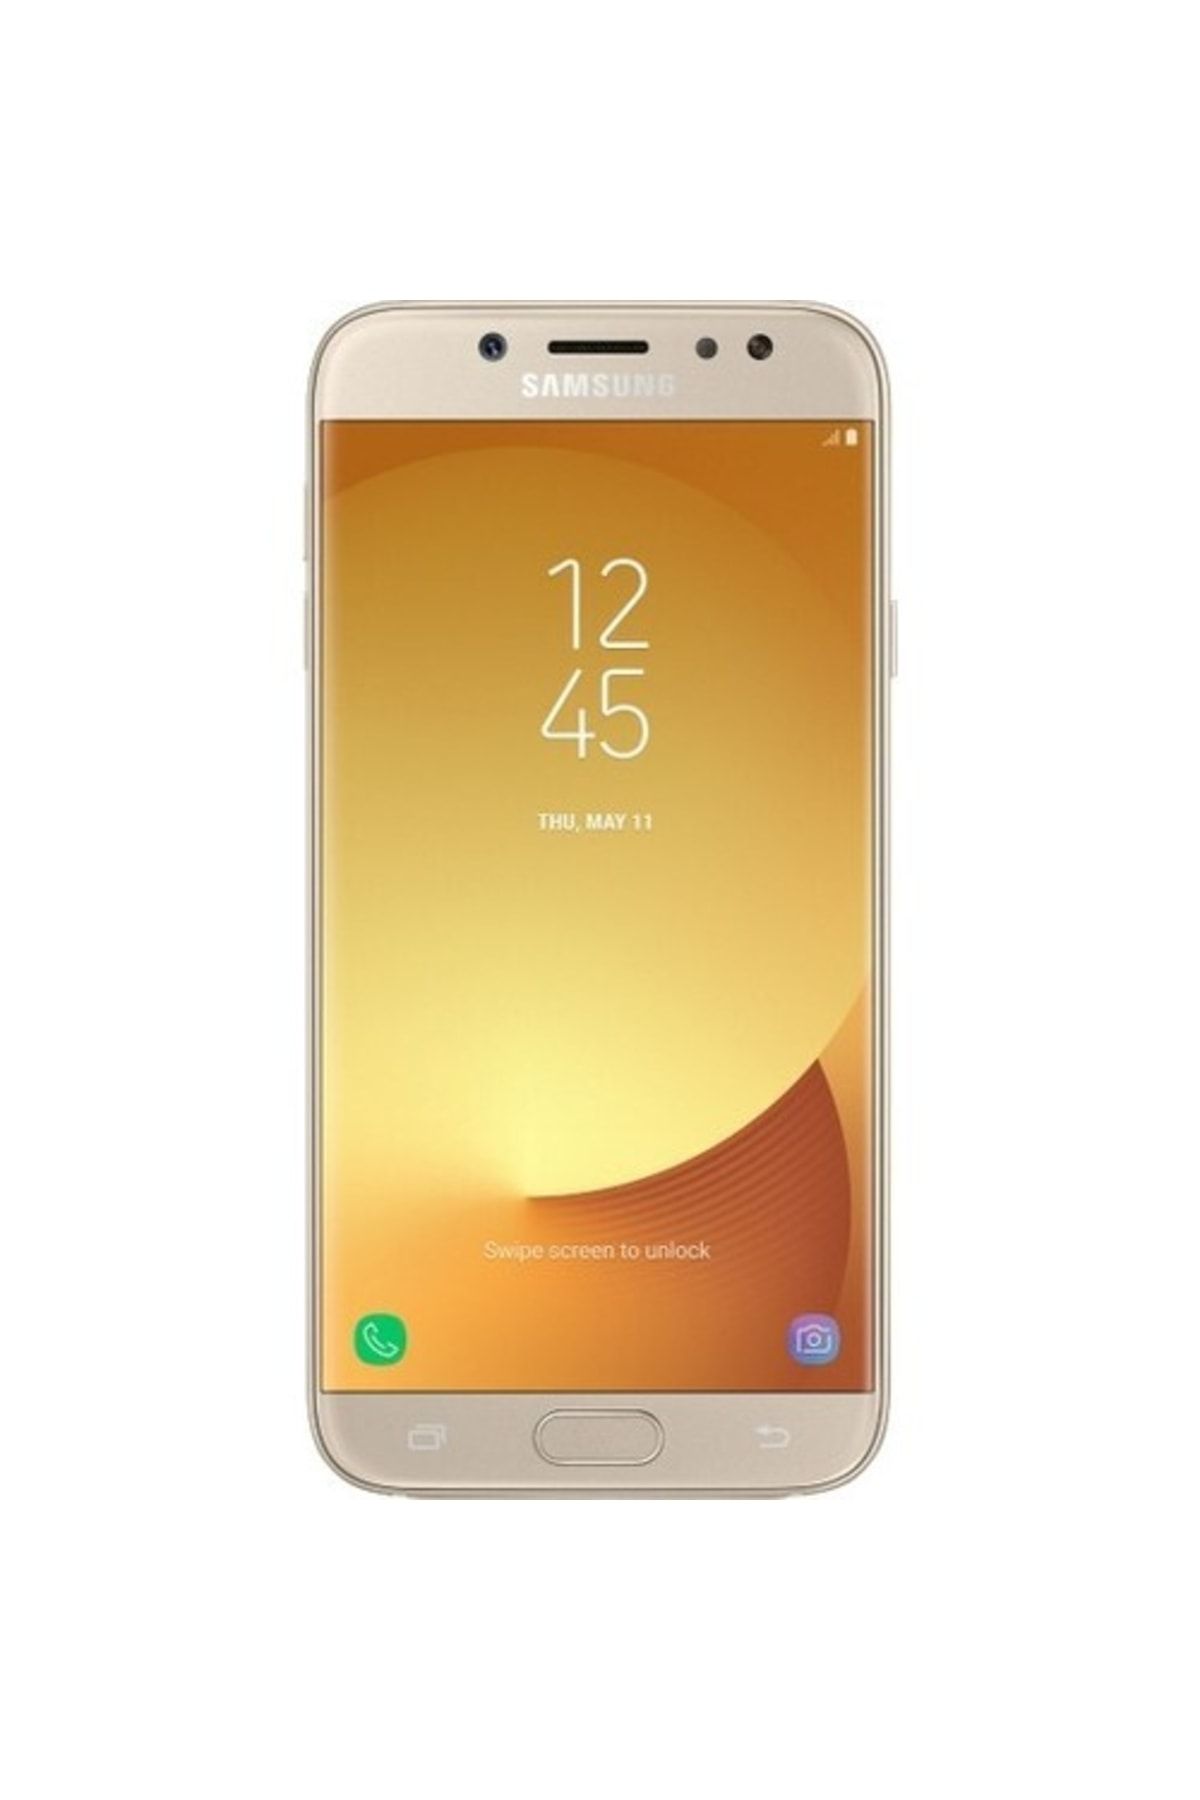 Samsung Yenilenmiş Galaxy J7 Pro Gold 64 GB